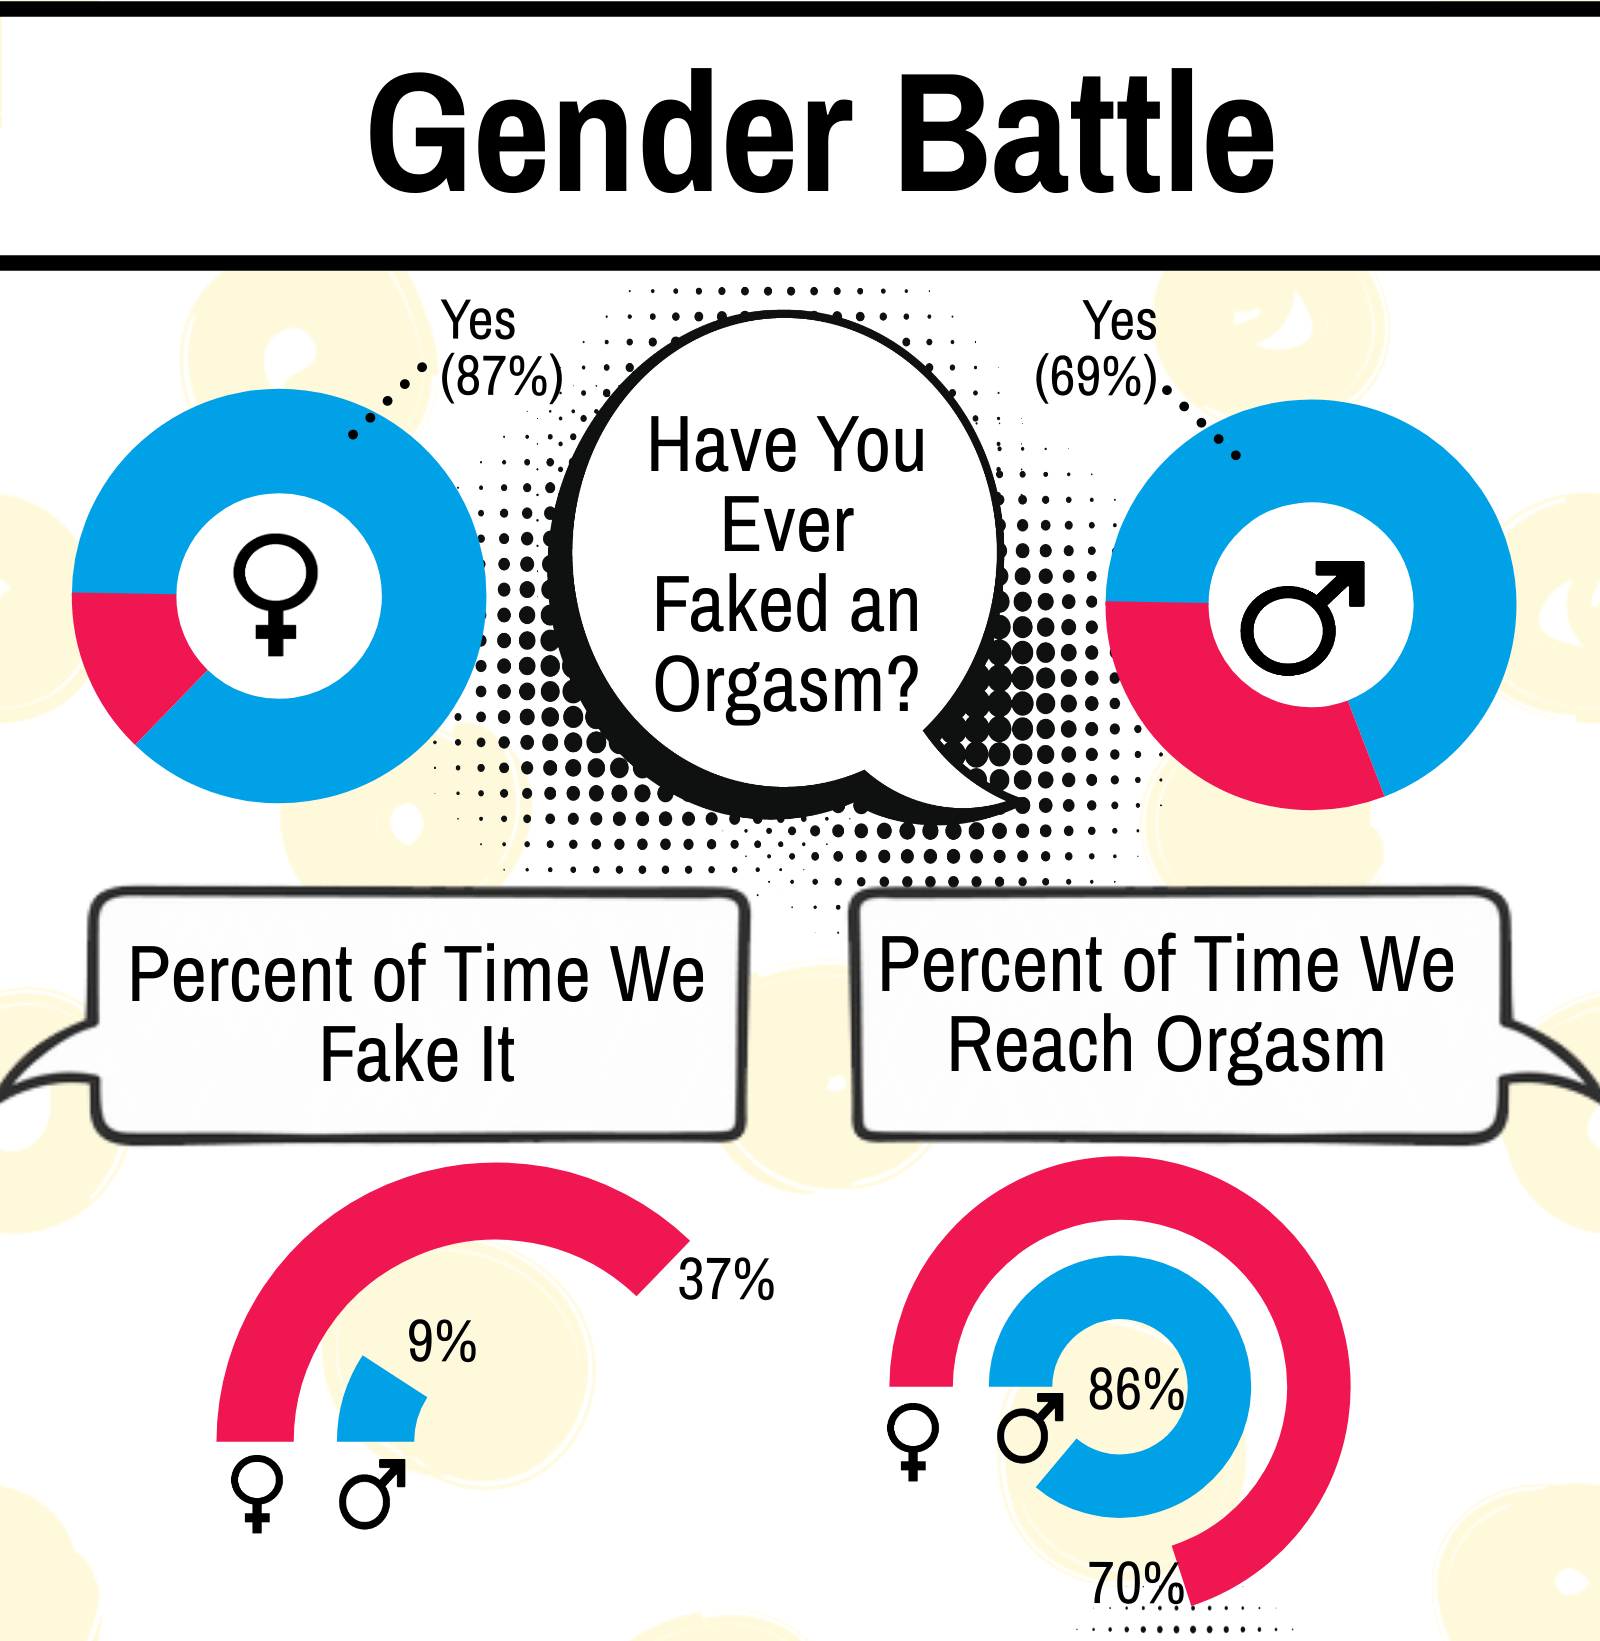 Gender Battle: fake vs. reach orgasm percentages